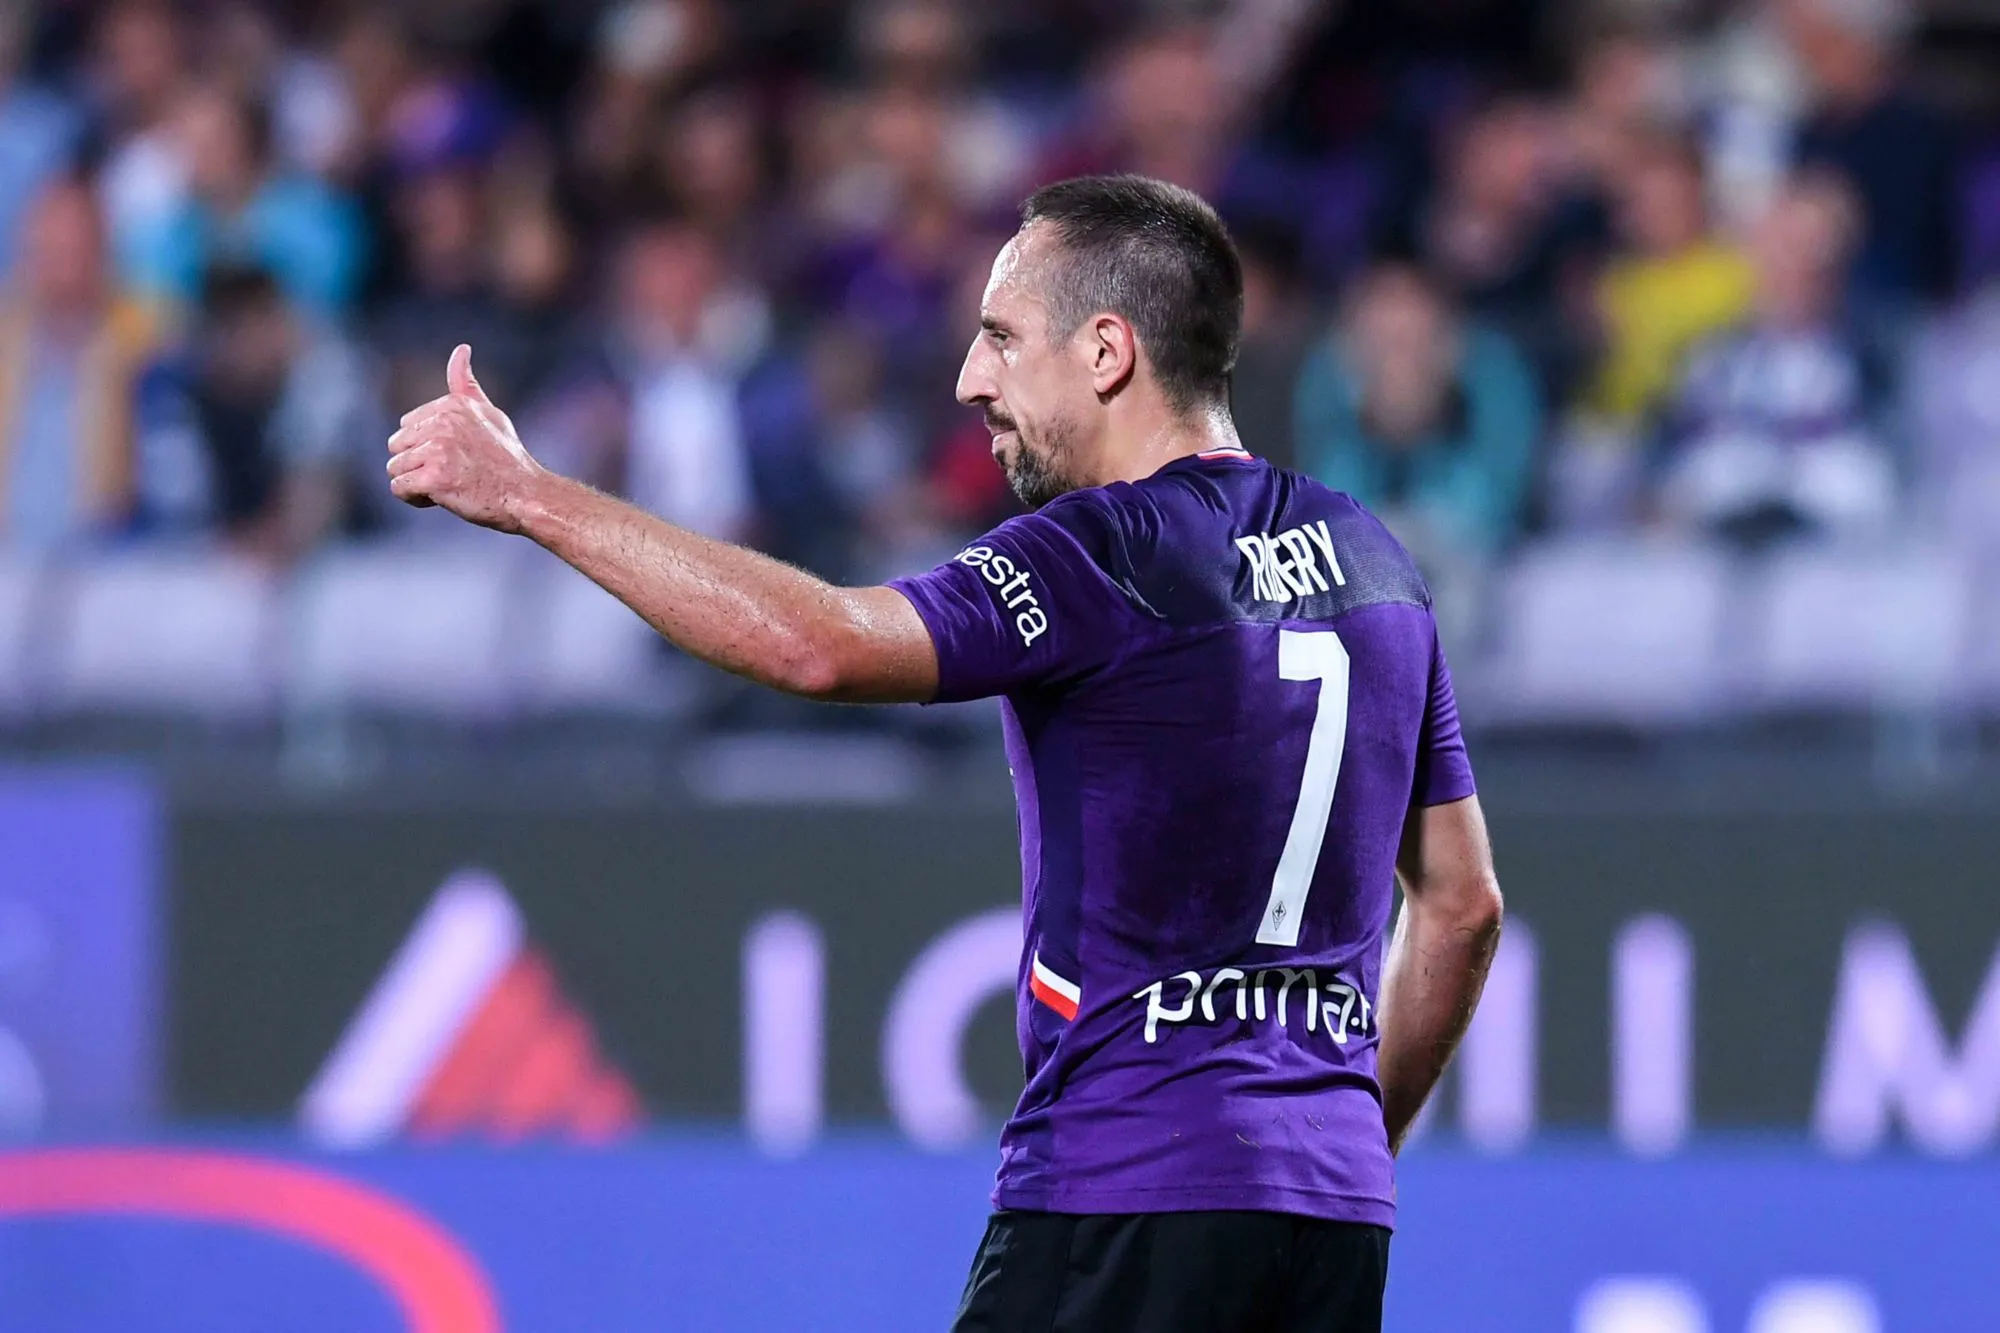 Pronostic Spal Fiorentina : Analyse, prono et cotes du match de Serie A